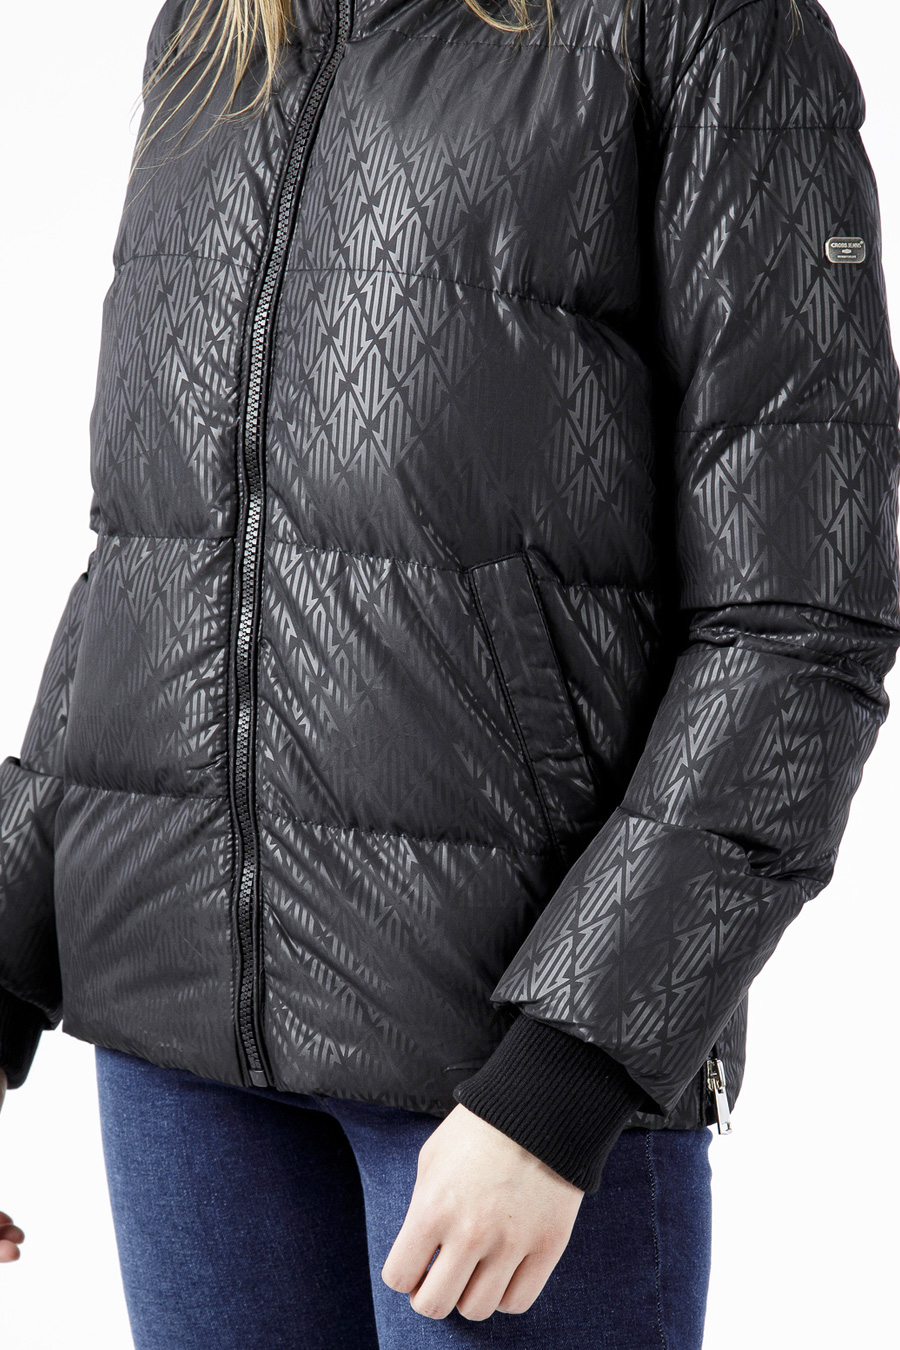 Winter jacket CROSS JEANS 81235-020